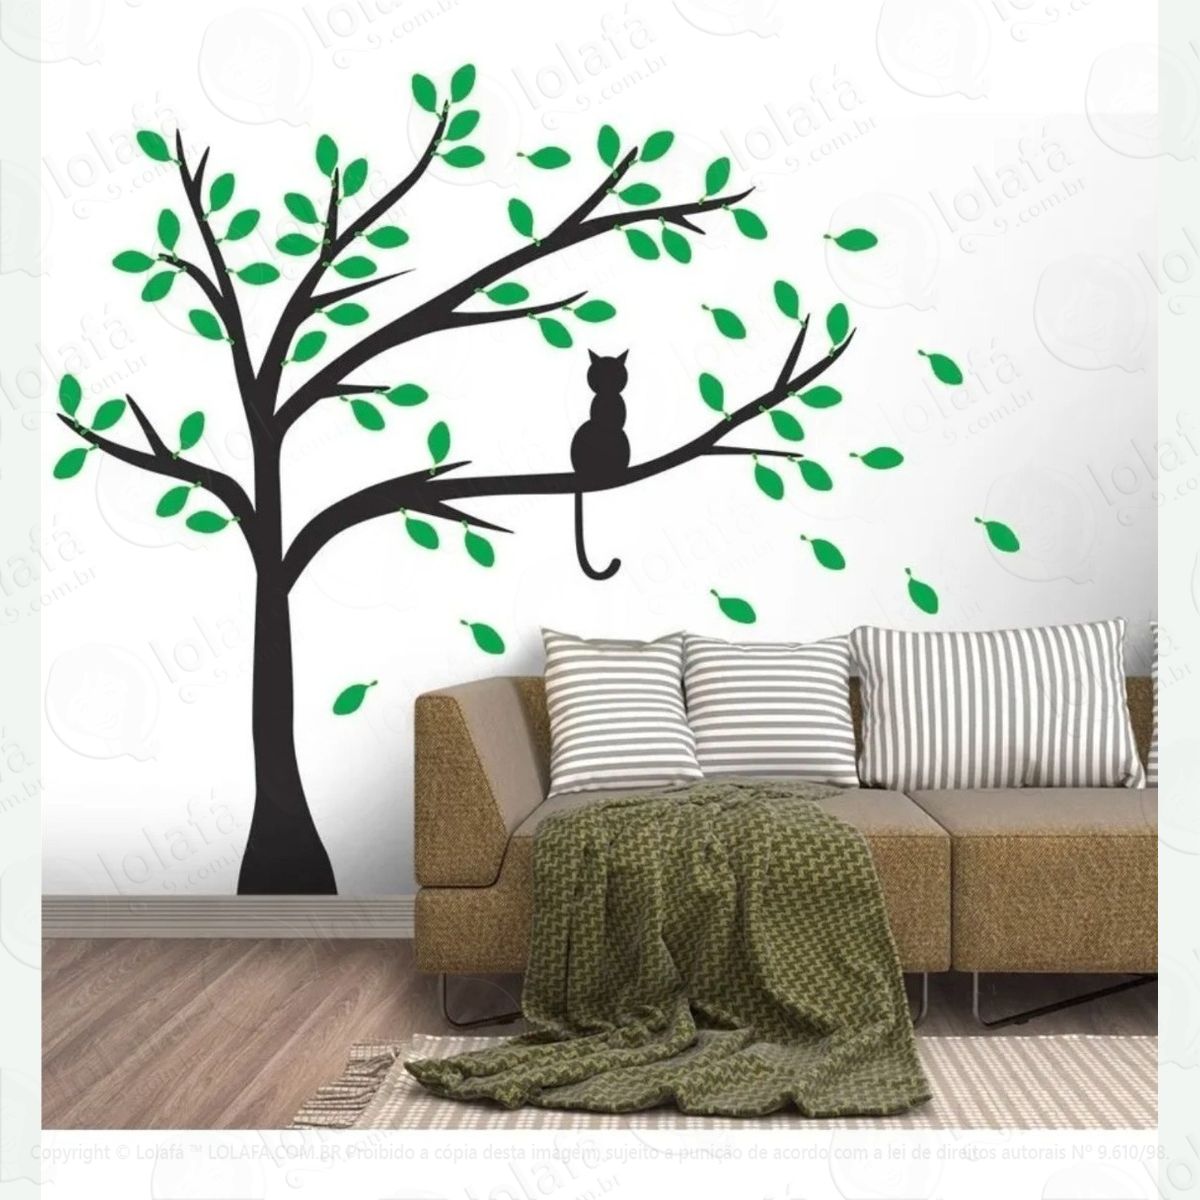 adesivo decorativo parede Árvore com gatinho e folhas verdes mod:729